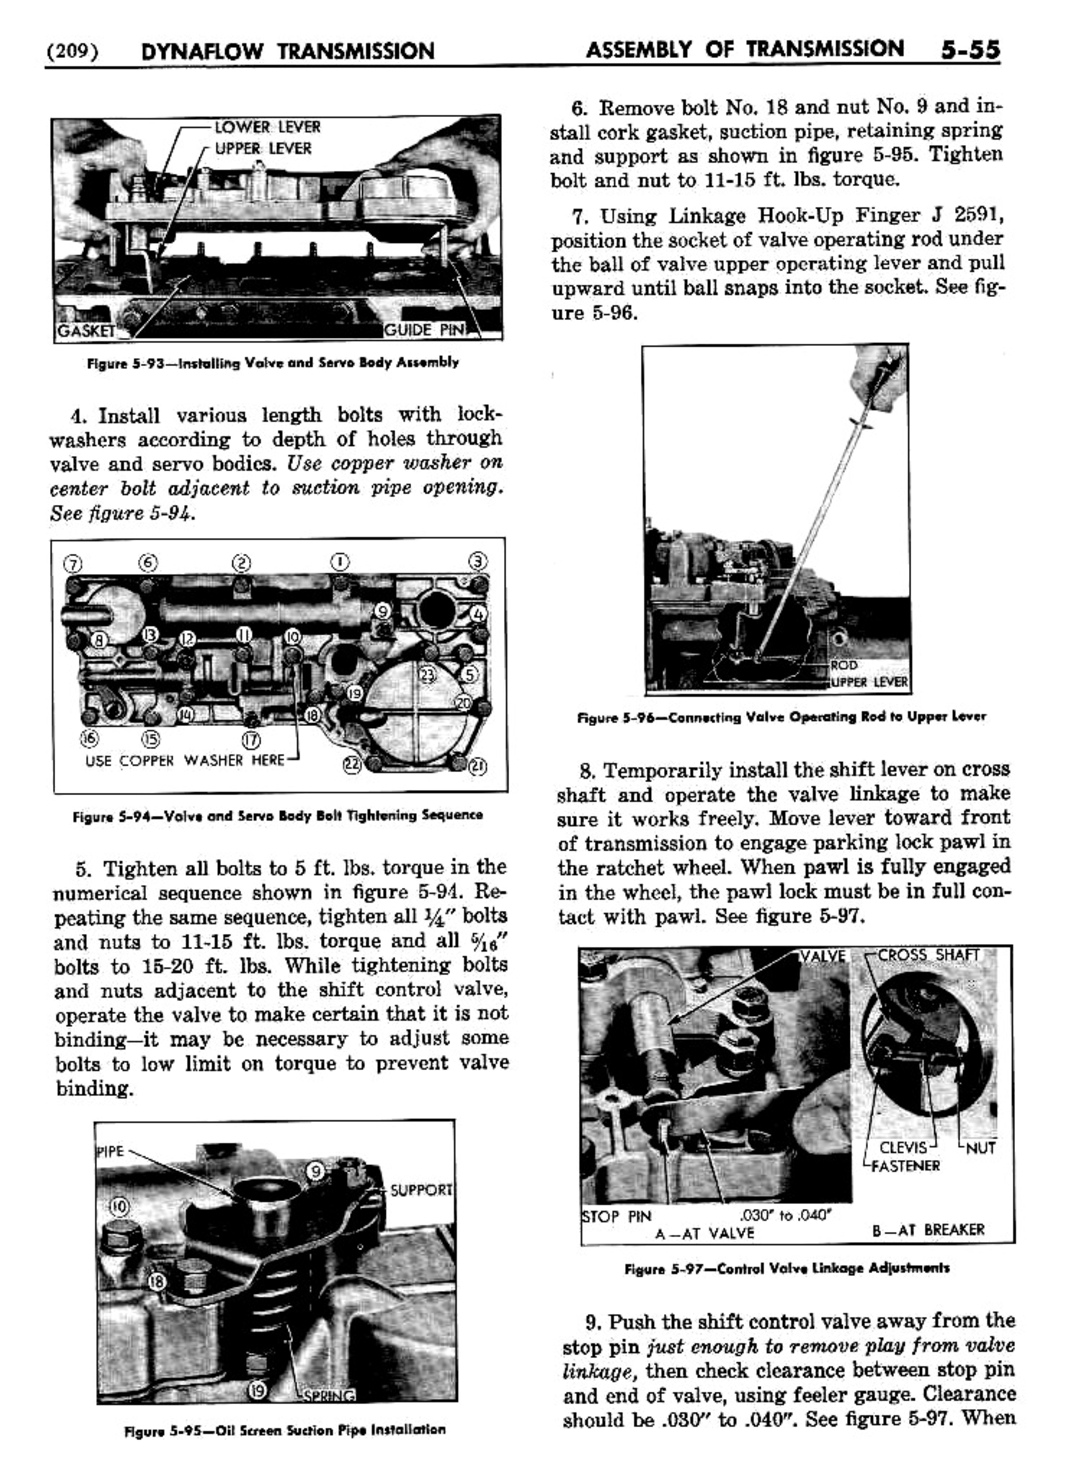 n_06 1954 Buick Shop Manual - Dynaflow-055-055.jpg